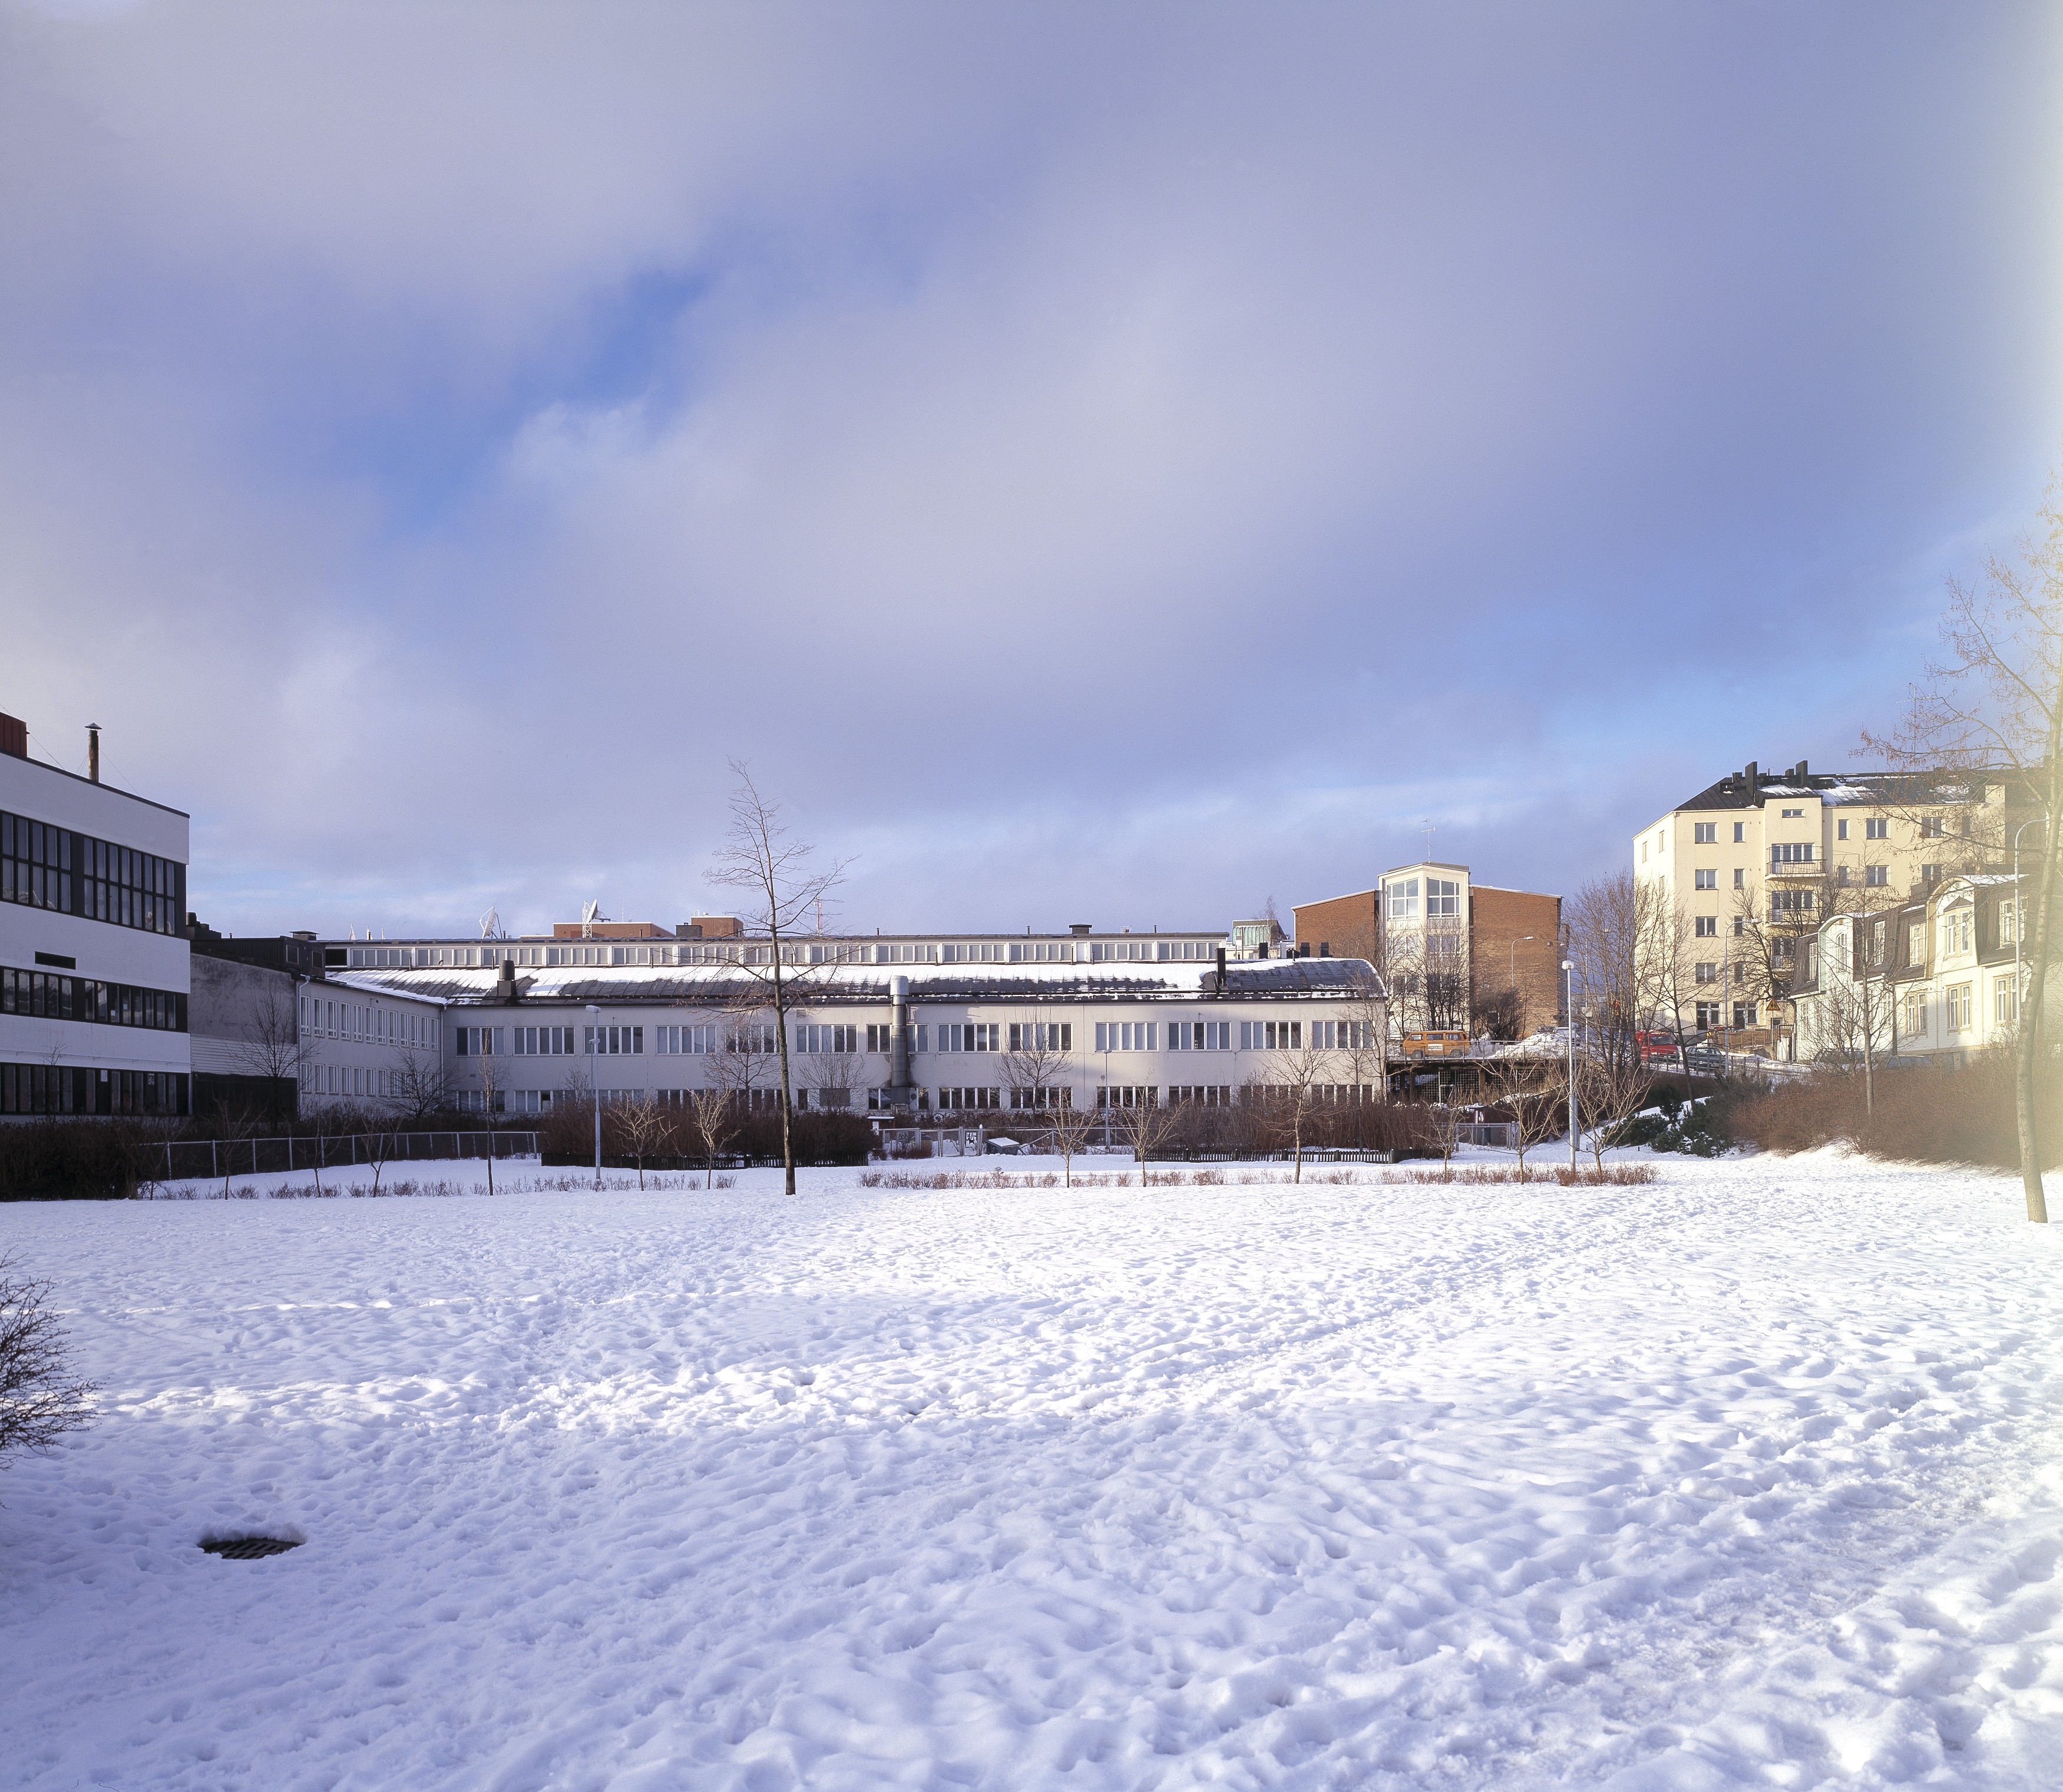 Posti ja Tele Sturenkatu 21. Rakennus alunperin osa Oy Volvo Ab:n pääkonttoria. Kiinteistössä oli myös Volvon huolto- ja peltikorjaamo, uusien autojen myyntipiste sekä varaosien ja tarvikkeiden myynti. Kuvassa olevassa hallissa oli uusien autojen näyttelytila. Rakennusta laajennettiin arkkitehti Ole Gripenbergin suunnitelmien mukaan vuonna 1942. Uusia tiloja olivat katettu paikoitustila, luentosali, konttori ja korjaamon laajennus. Kaarihallia pidennettiin Arthur Rosendahlin suunnitelmien mukaan vuonna 1945. Kaarihallin päätyyn lisättiin ajosillat P. G. Gyldénin suunnitelmien mukaan vuonna 1955. Katettu paikoitustila muutettiin sisätilaksi ja samalla tehtiin joitakin muutoksia konttori- ja varastotiloissa arkkitehti Bertel Gripenbergin suunnitelmien mukaan vuonna 1958. Bertel Gripenberg suunnitteli rakennukseen muitakin muutoksia 1960 -luvulla ja 1970 -luvulla. Ikkuna- ja ovimuutoksia sekä käyttötarkoituksen vaihtumisesta on tehty myös 1980 -luvulla ja 1990 -luvulla.  Halliosan kaarevaa kattoa korostaa vielä koko hallin mittainen kattolyhty.